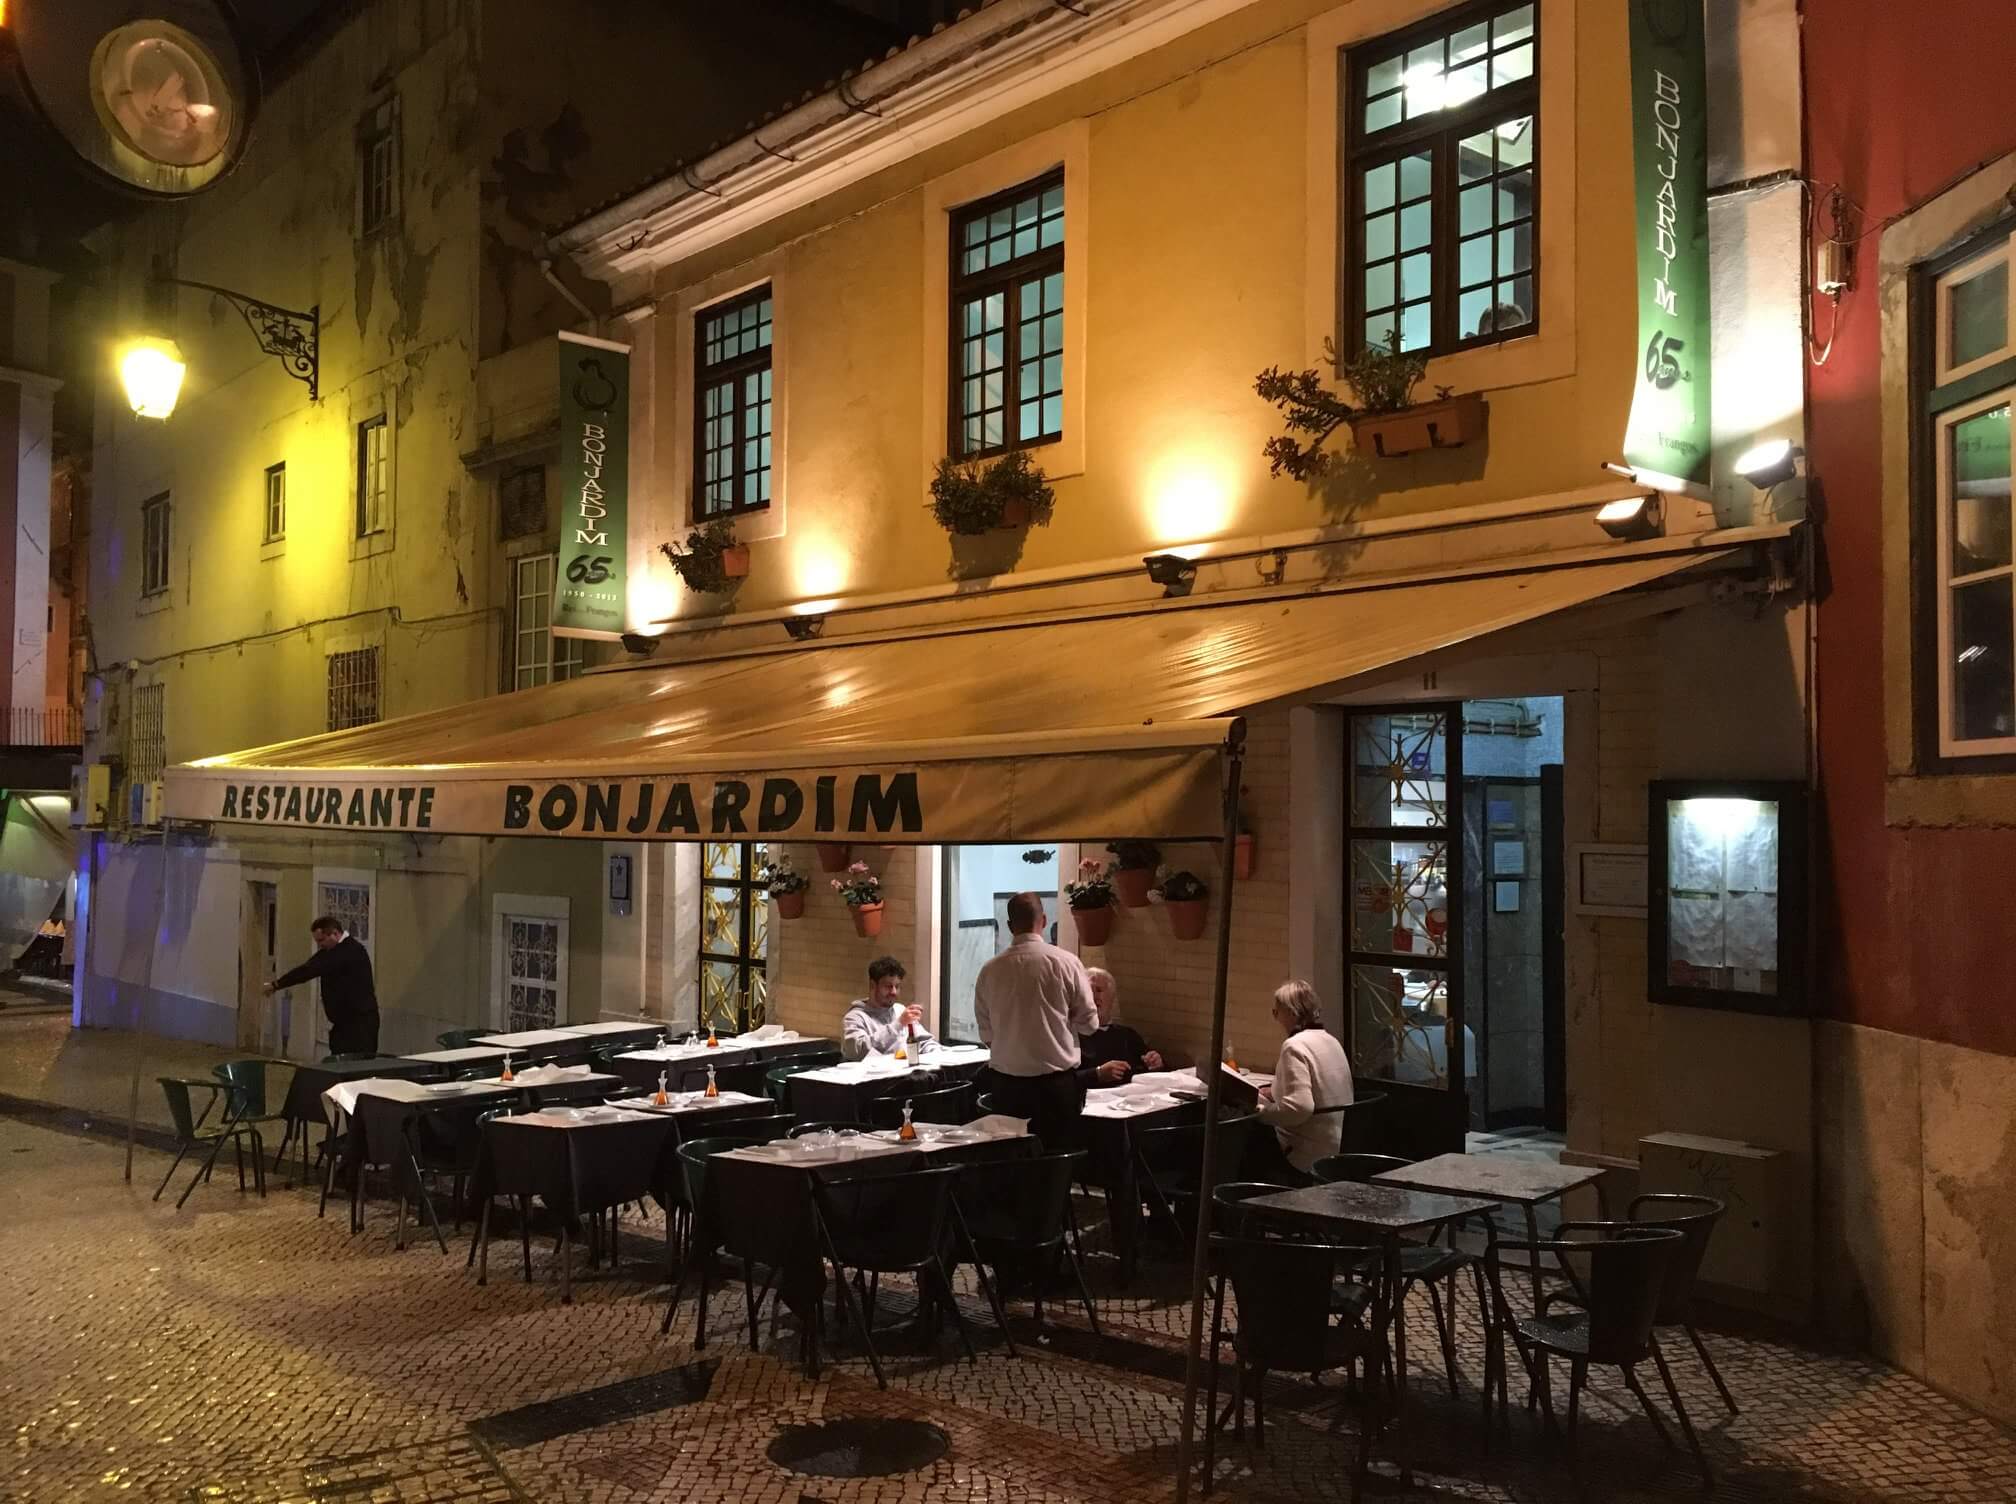 Totte | リスボンの安くて美味しい炭火焼のローストチキン屋さん『Bonjardim』